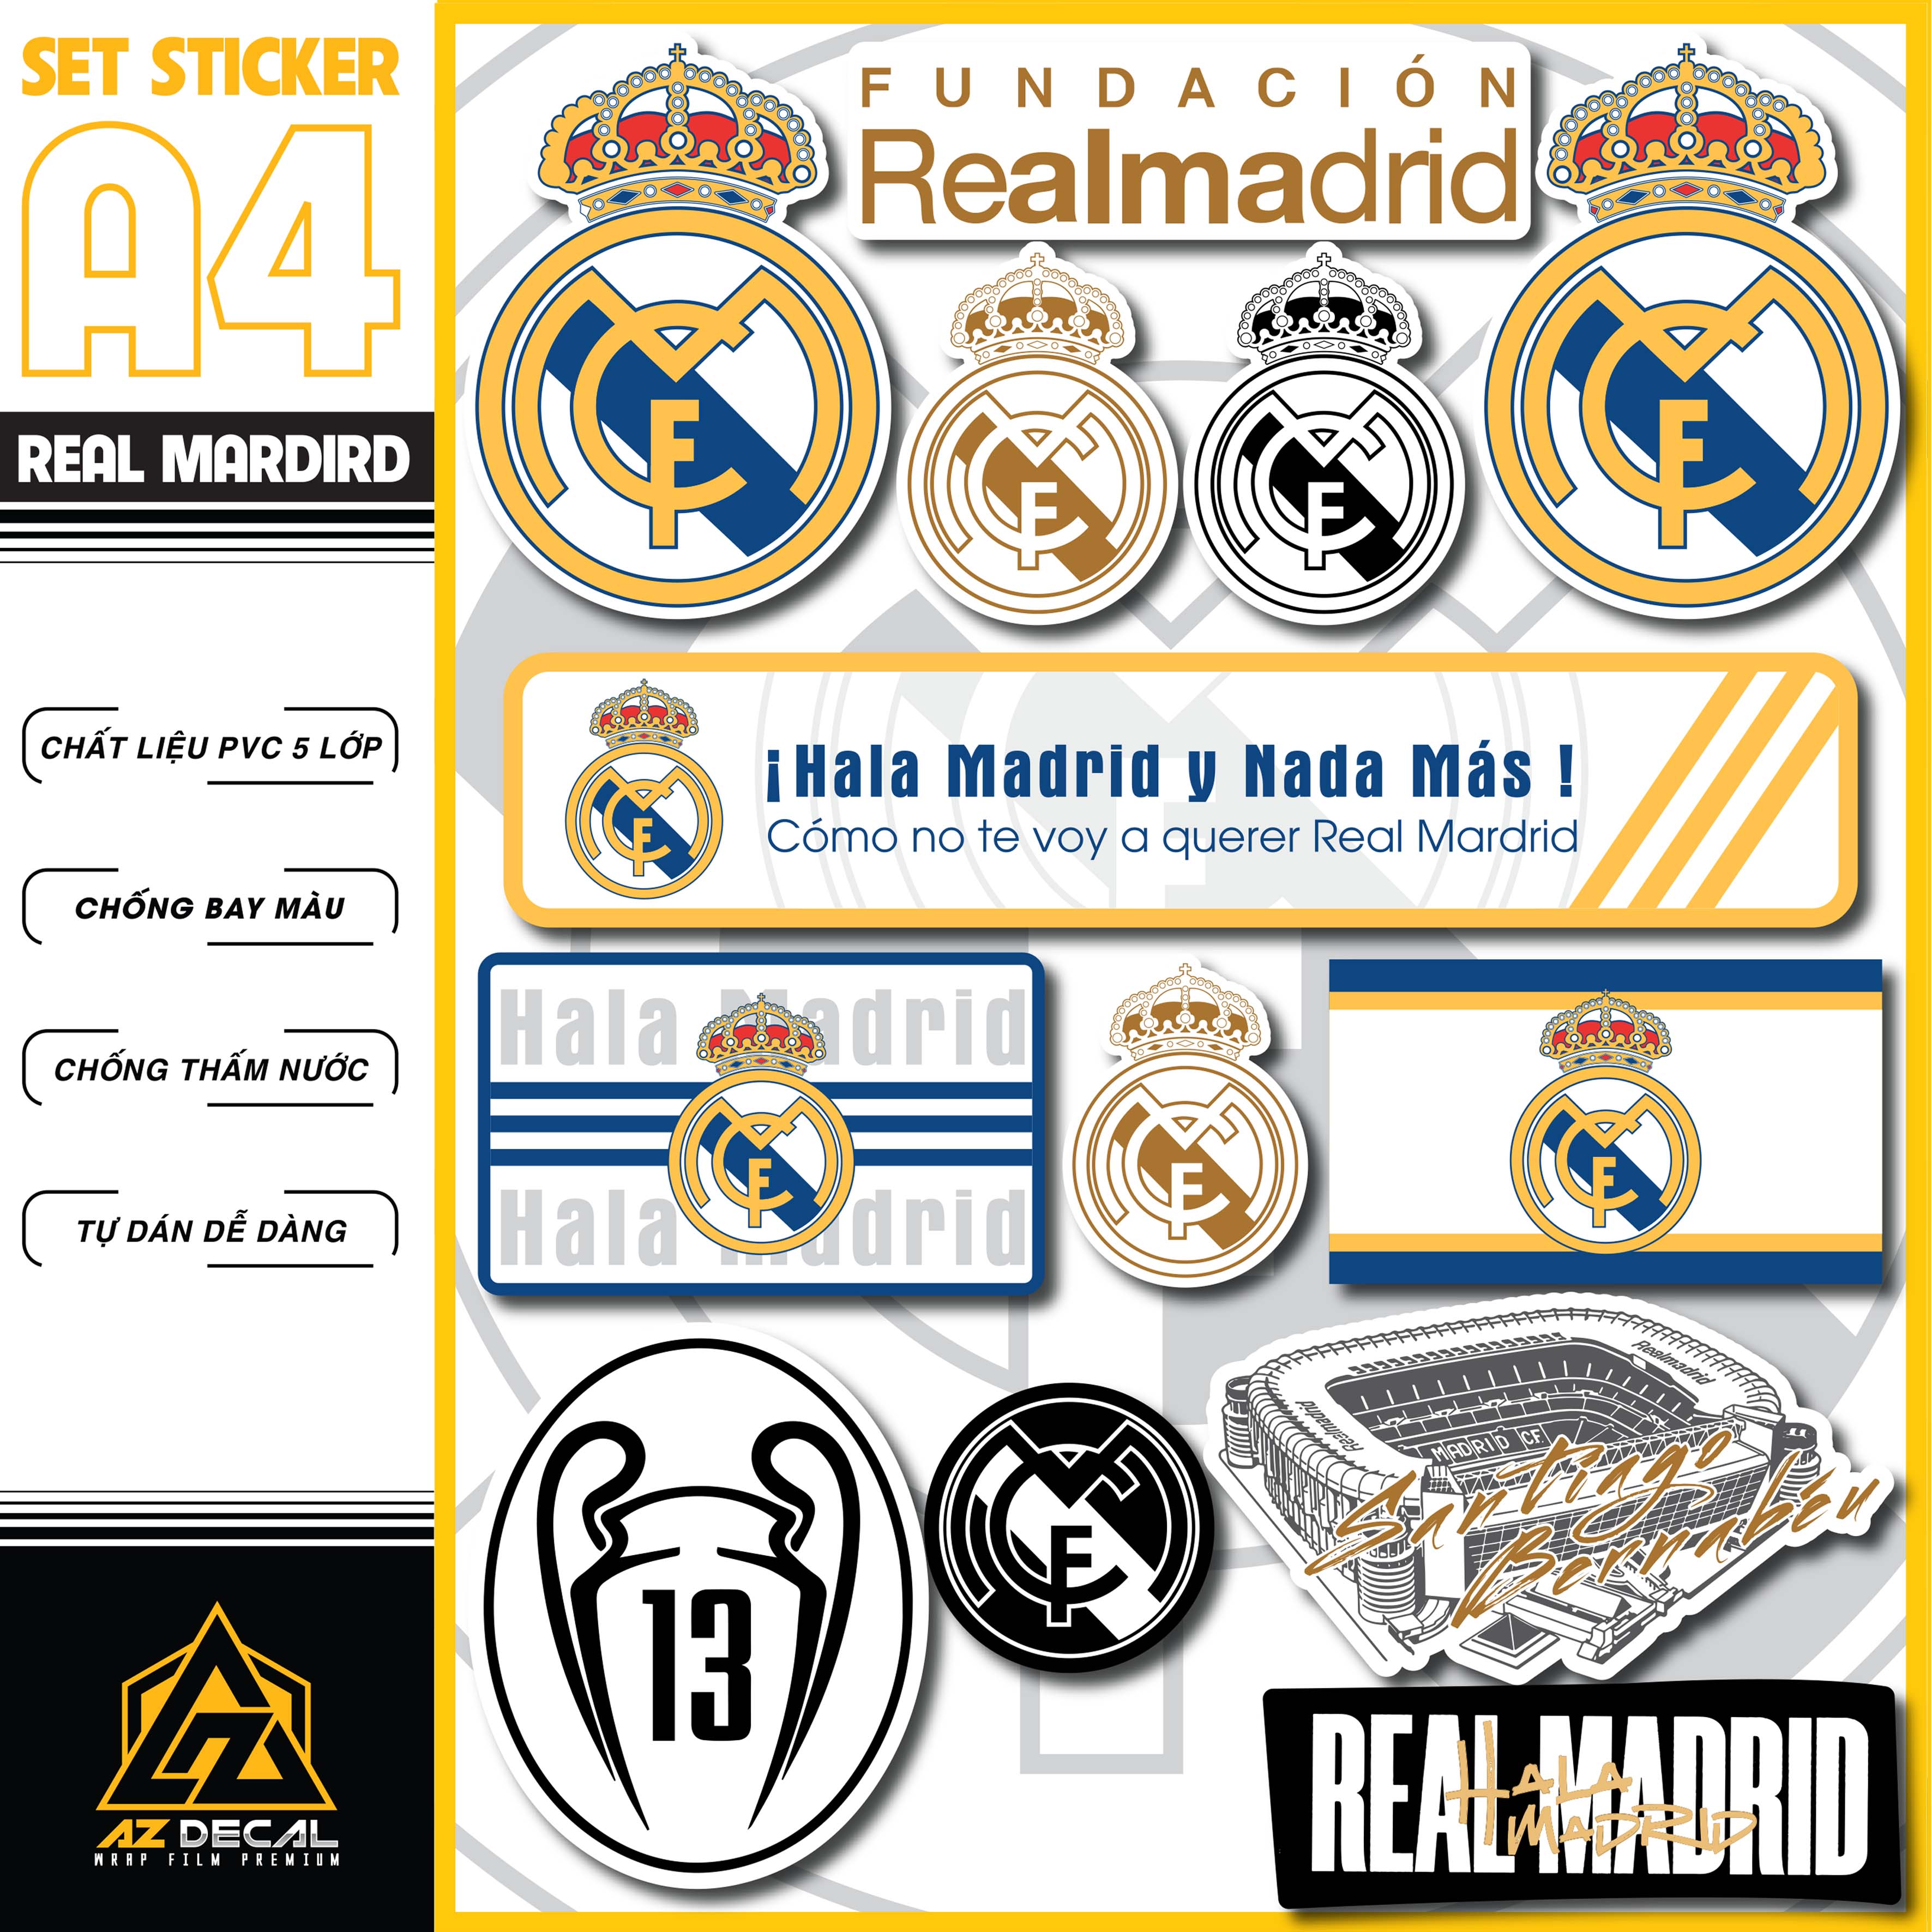 Hình Dán Sticker CLB Real Madrid Dán Tem Xe, Dán Nón, Điện Thoại, Laptop - Chất Liệu Chống Thấm Nước, Bền Màu